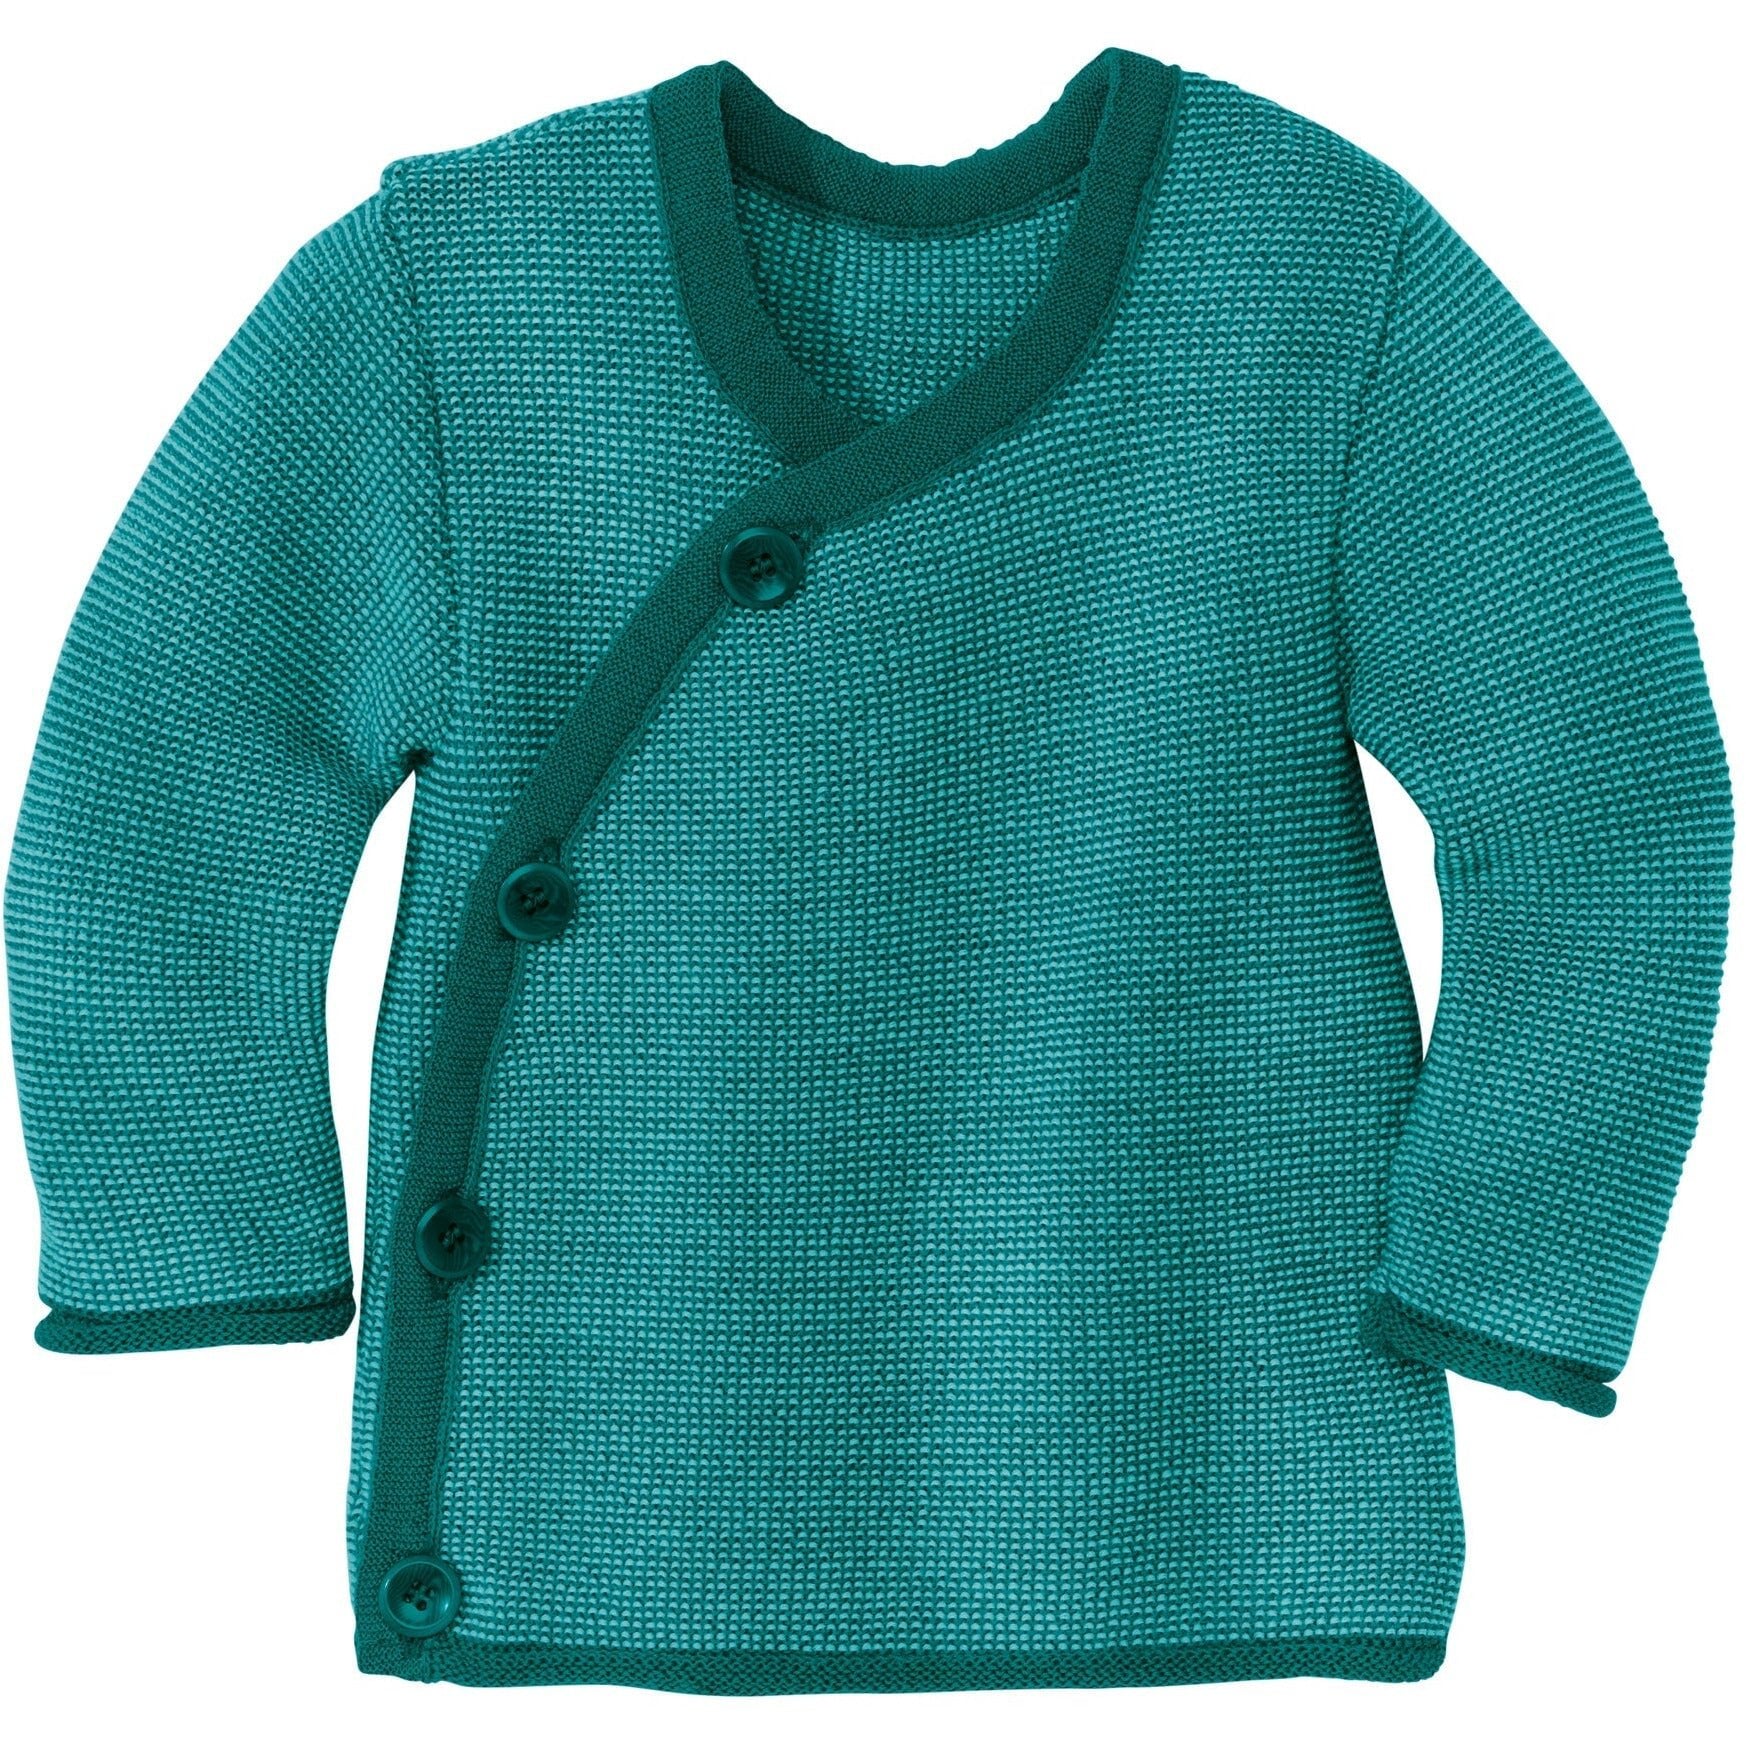 Disana Merino Melange Button-Up Sweater - Nature's Wild Child